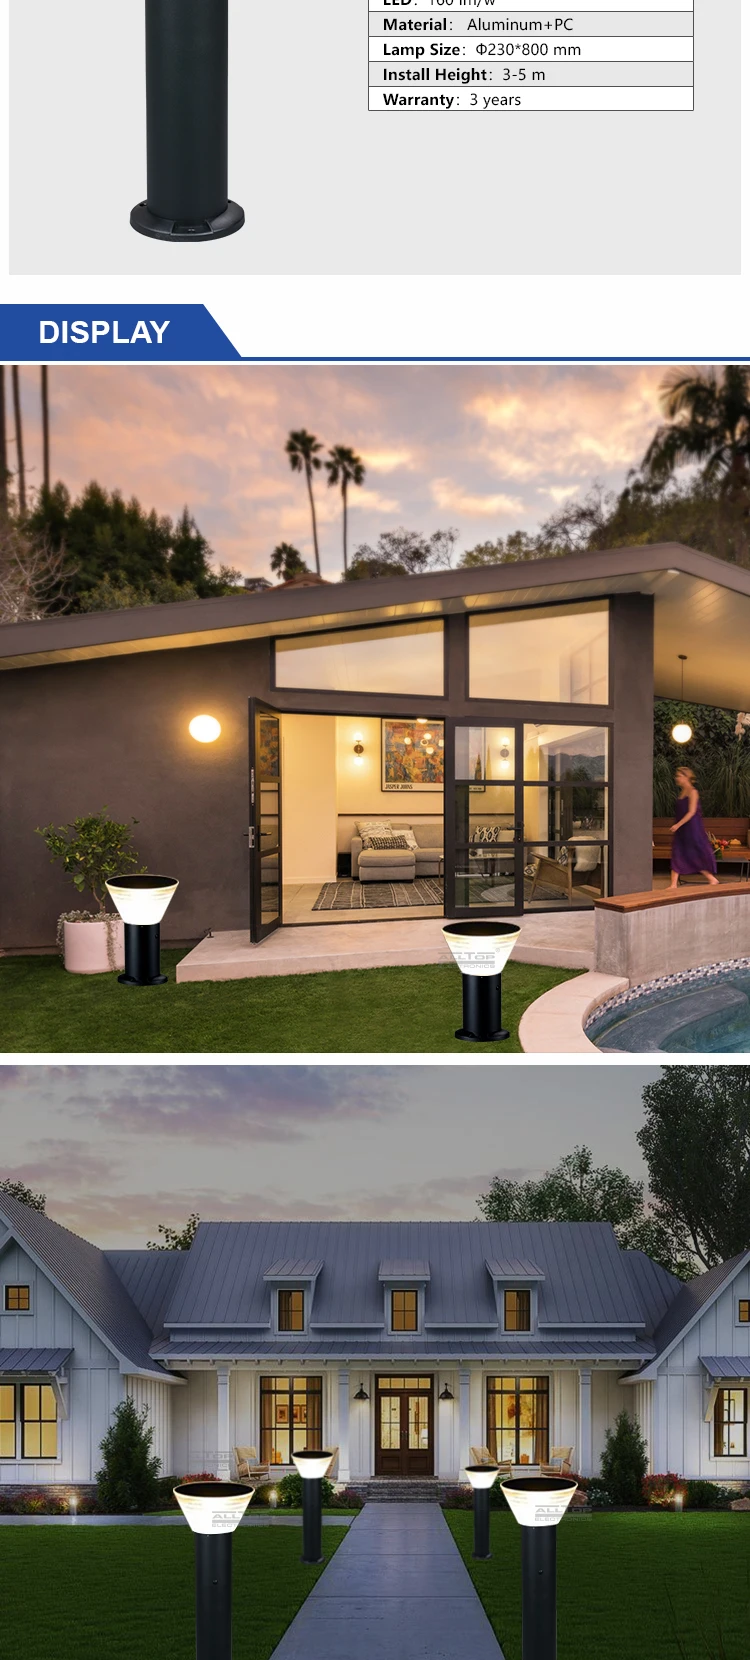 ALLTOP Bridgelux waterproof ip65 outdoor 5w all in one solar led garden light price